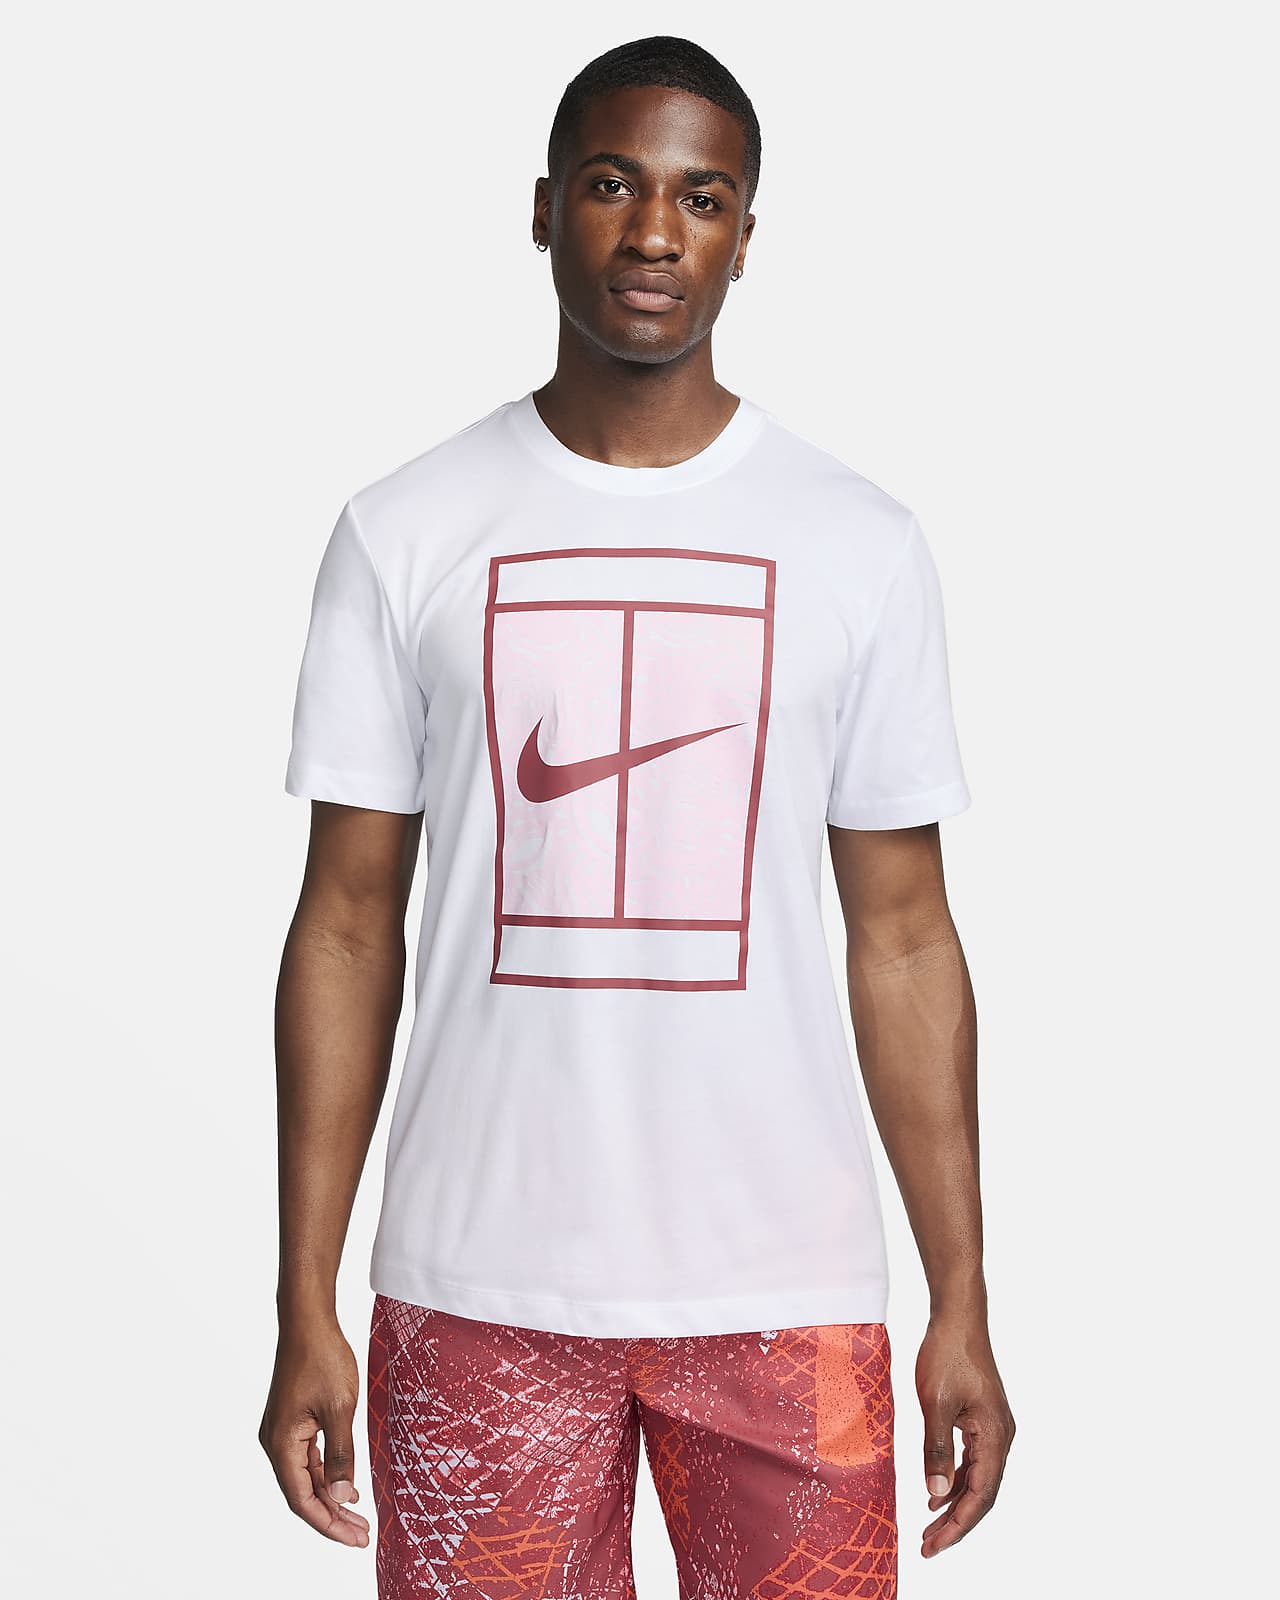 NikeCourt Dri-FIT Men's Tennis T-Shirt Unisex